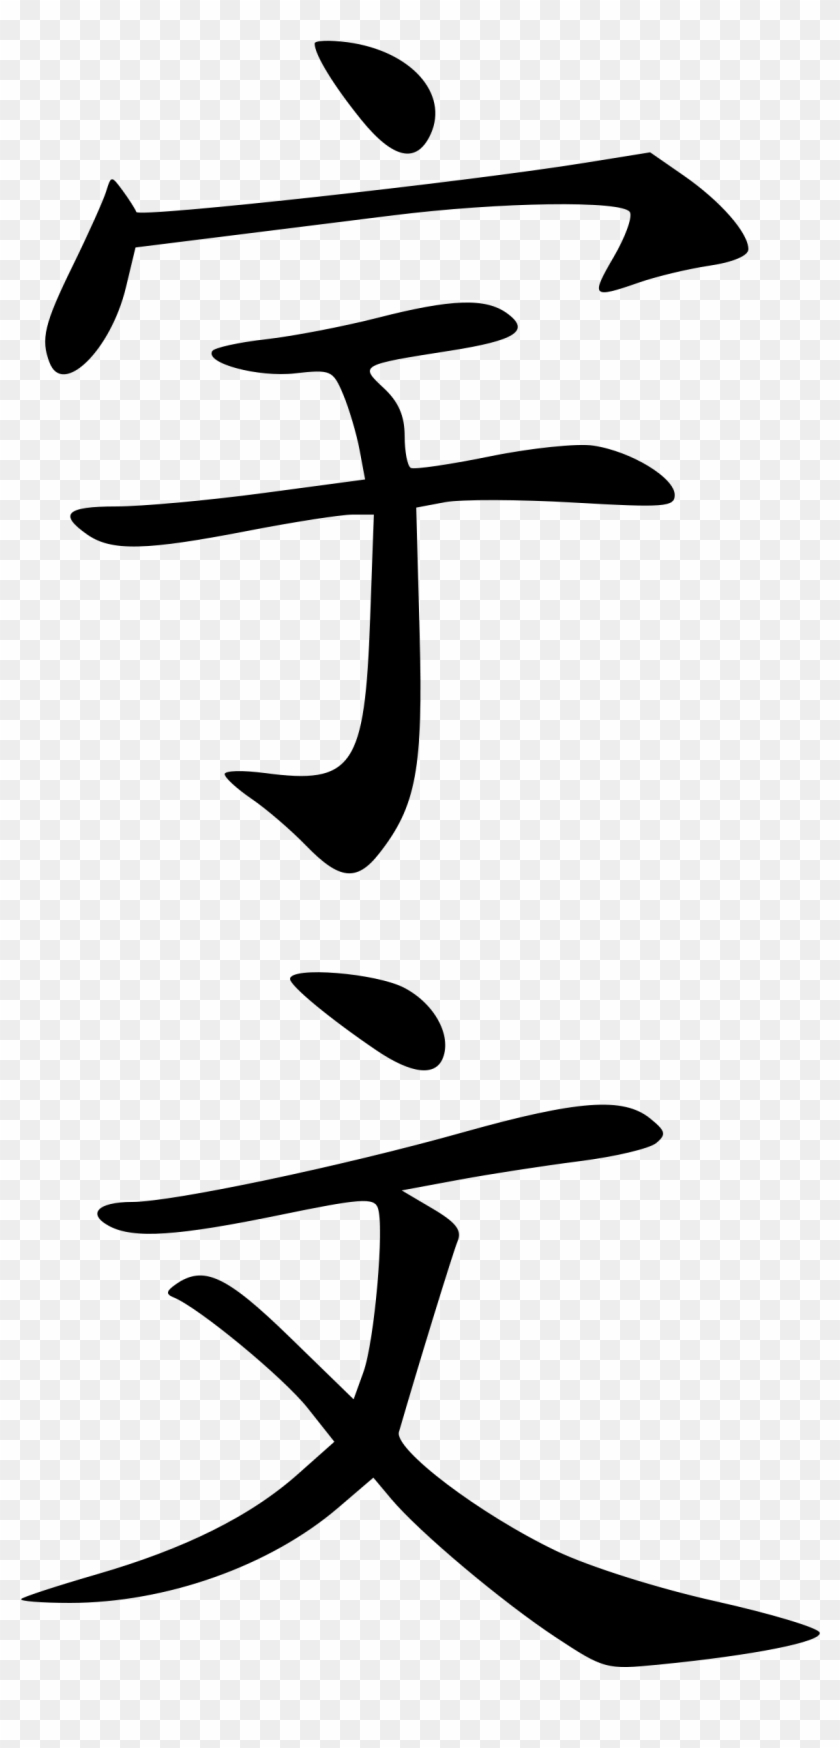 Yuwen - Universe In Japanese Kanji #1659553